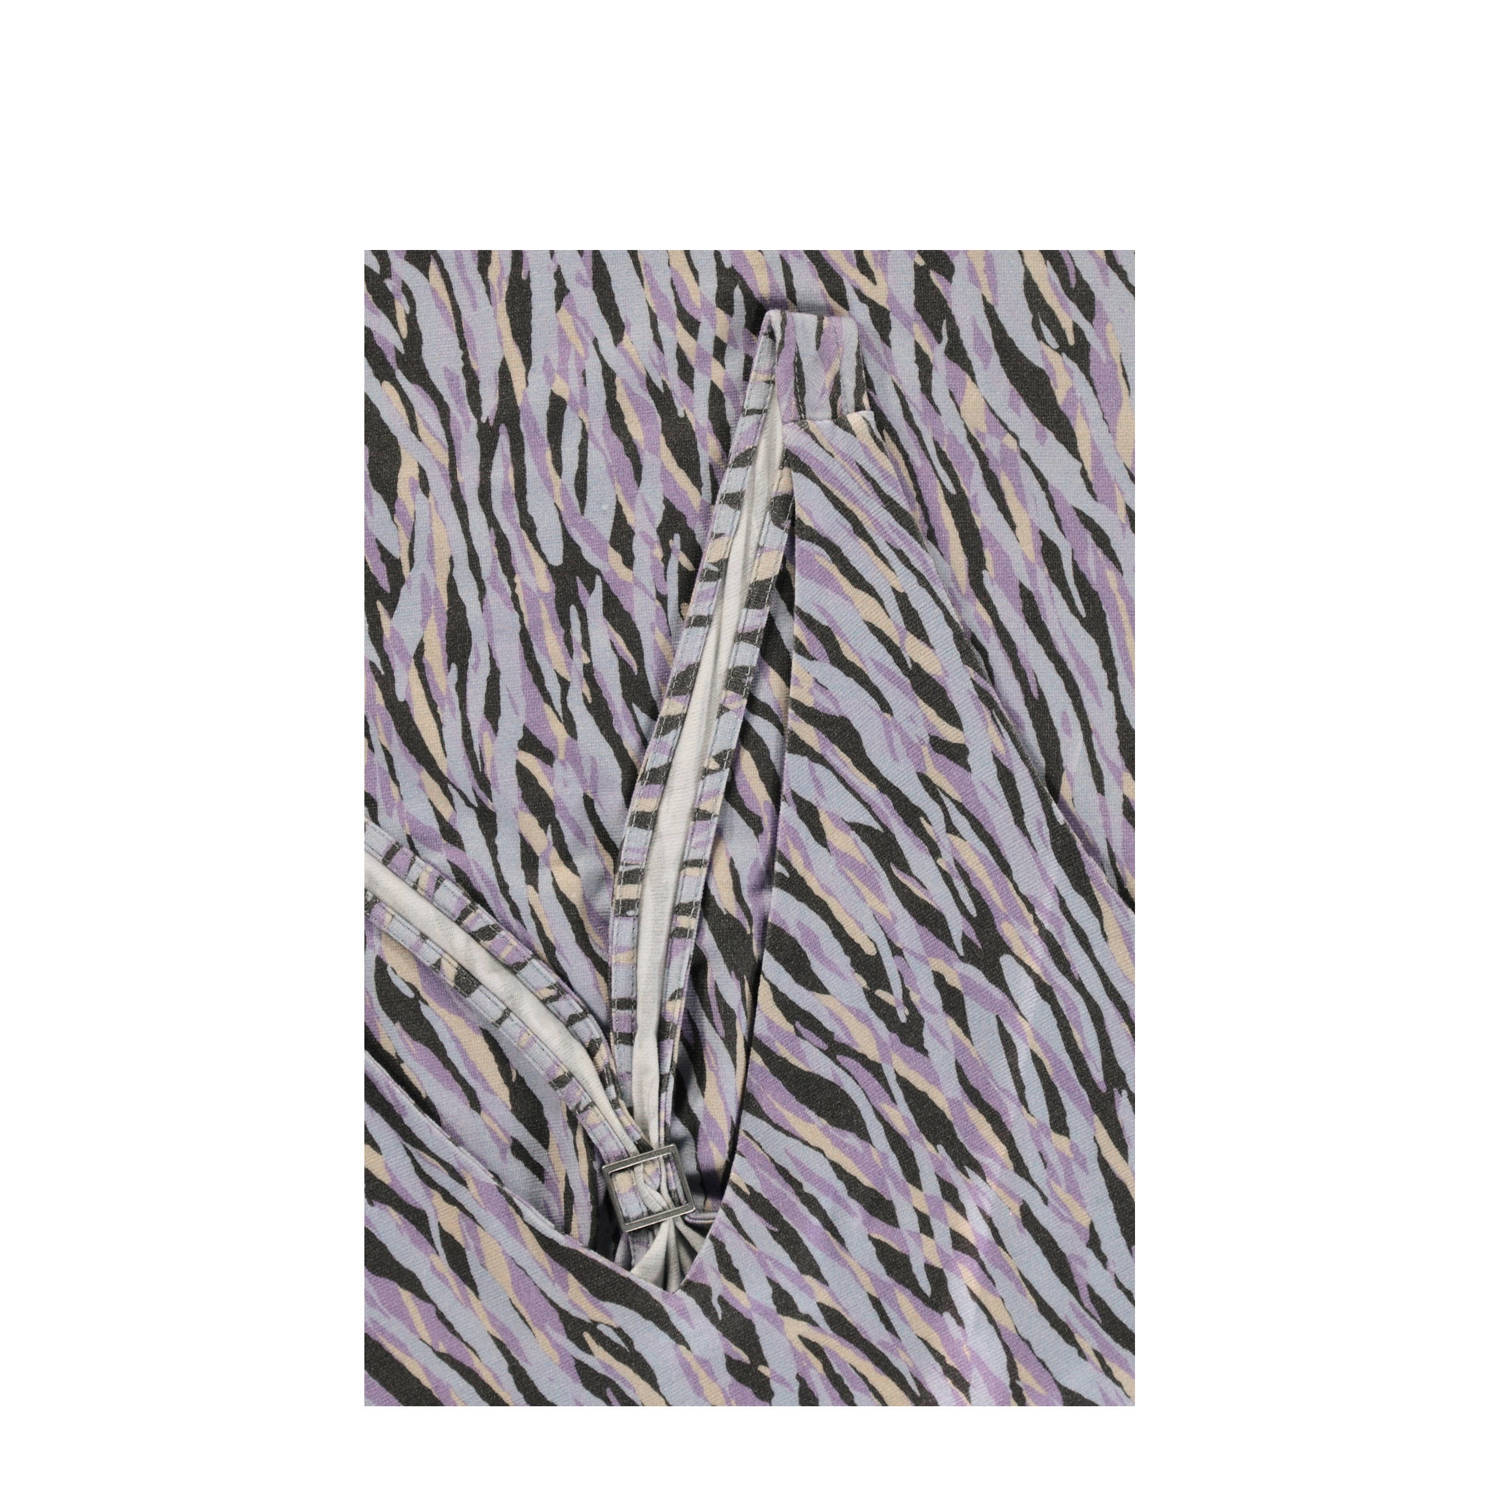 Expresso geweven top met zebraprint paars zwart blauw